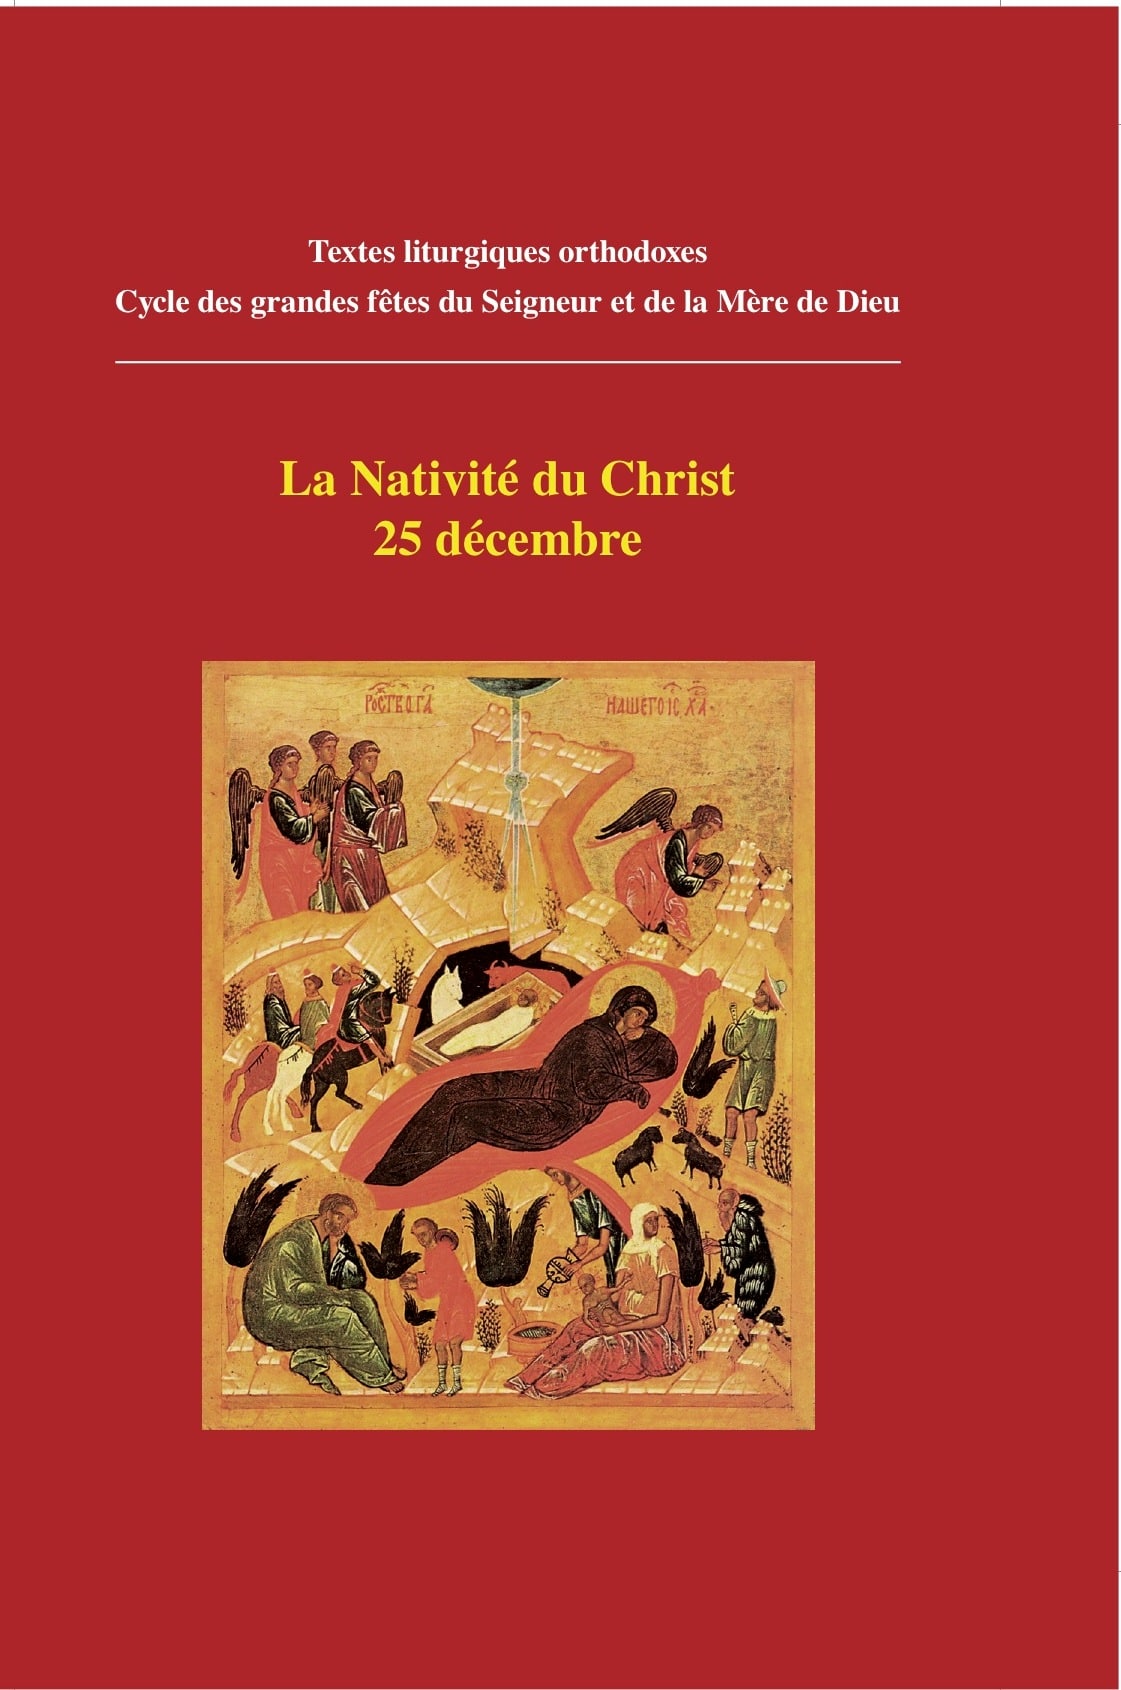 Textes liturgiques: “La Nativité du Christ” et de “La Théophanie”